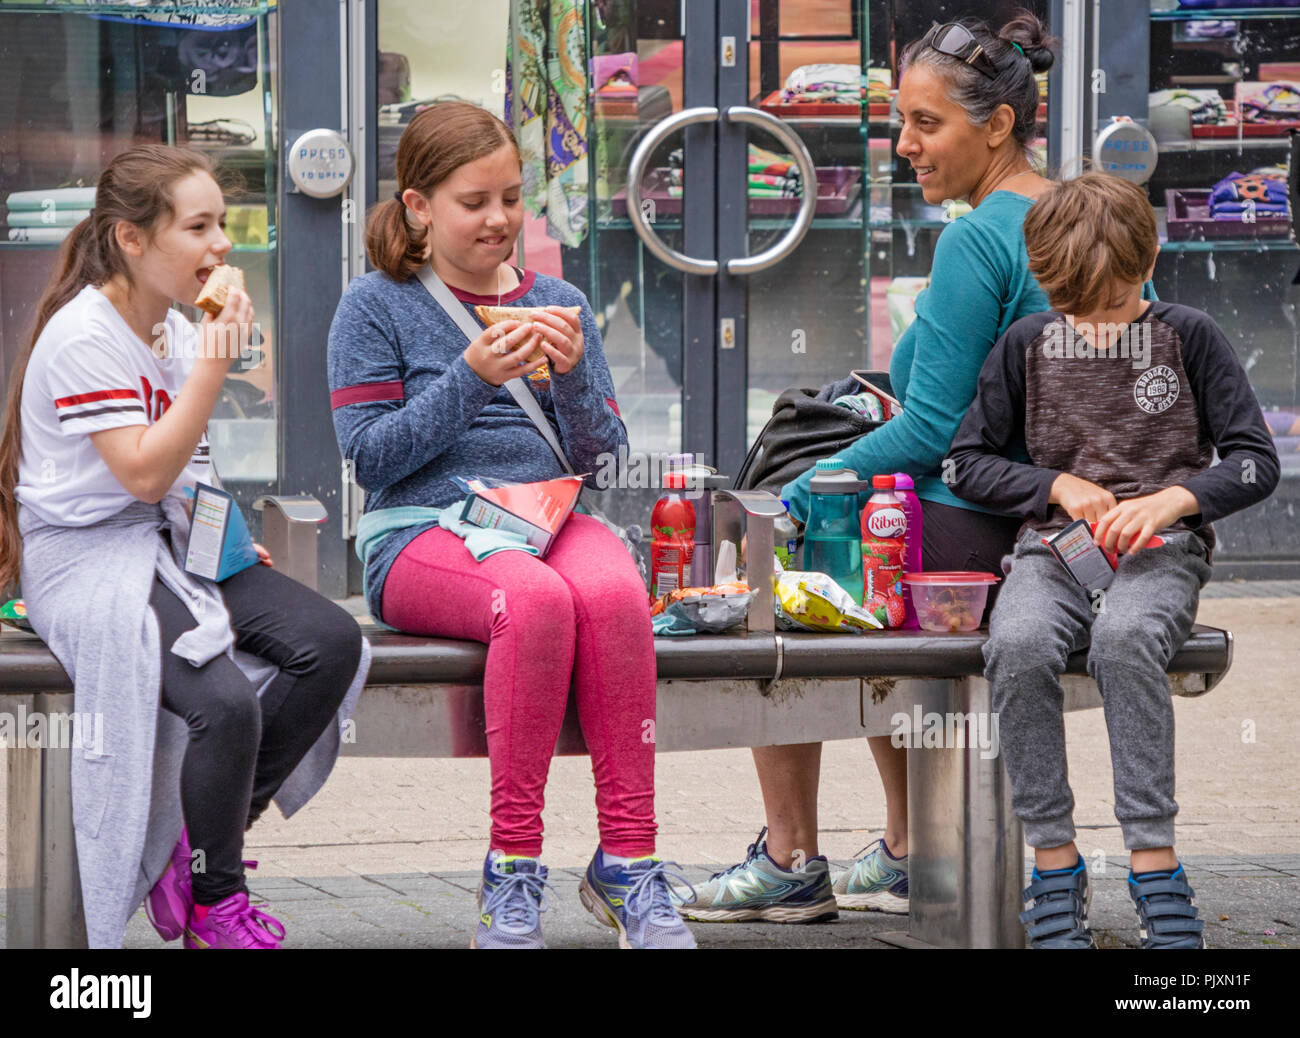 Les enfants mangeant shop acheté restauration rapide tout en faisant du shopping à Bristol, Angleterre, Royaume-Uni Banque D'Images